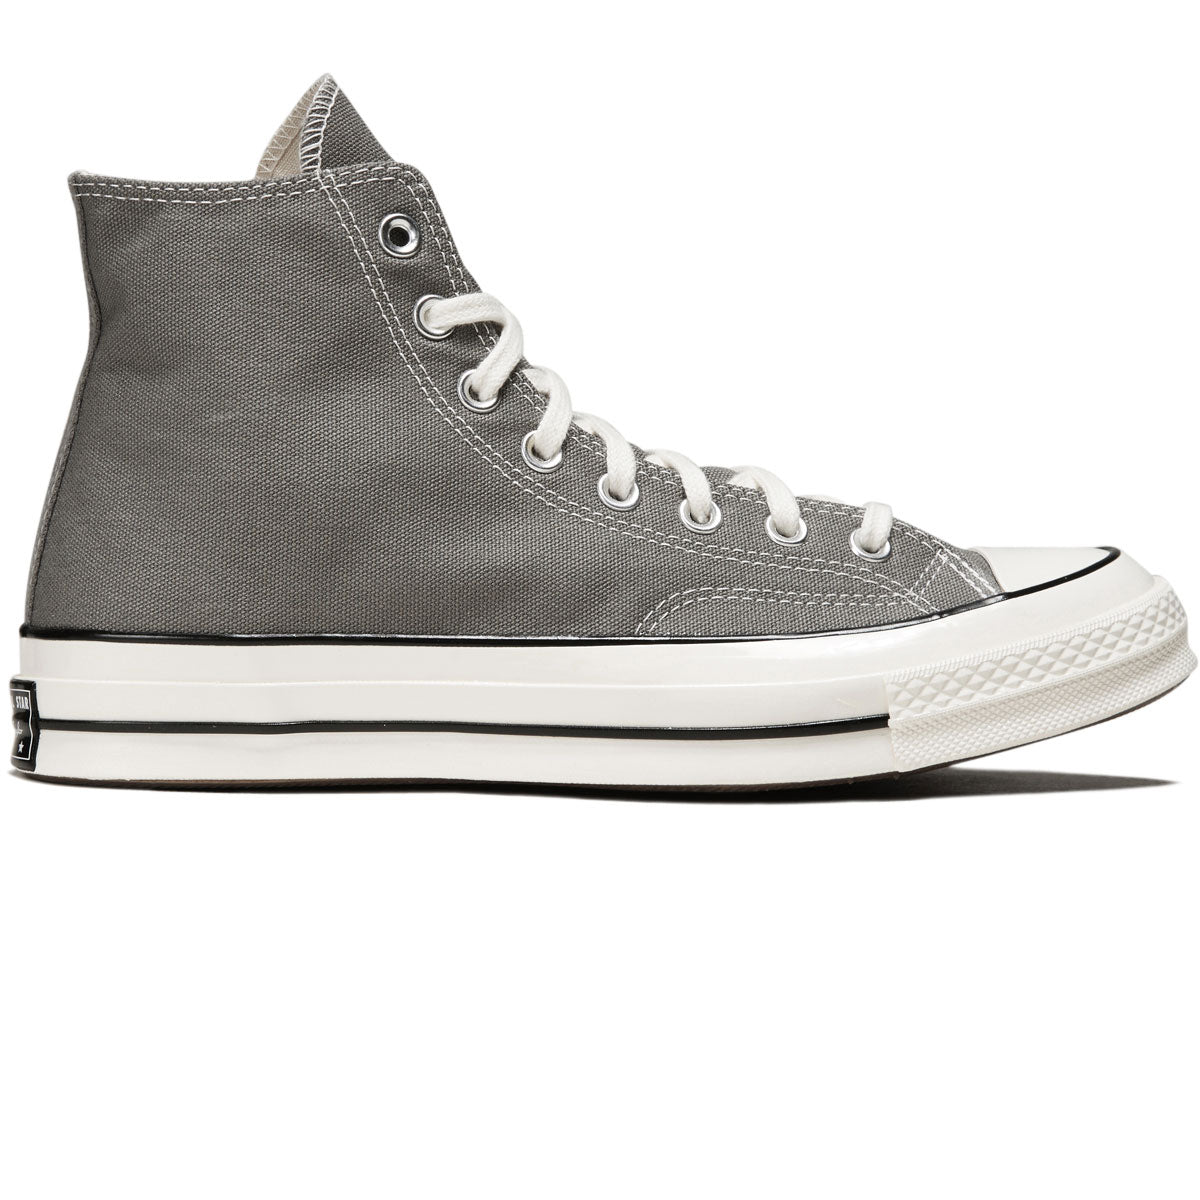 Converse Chuck 70 Hi Shoes - Black/Black/Egret – CCS